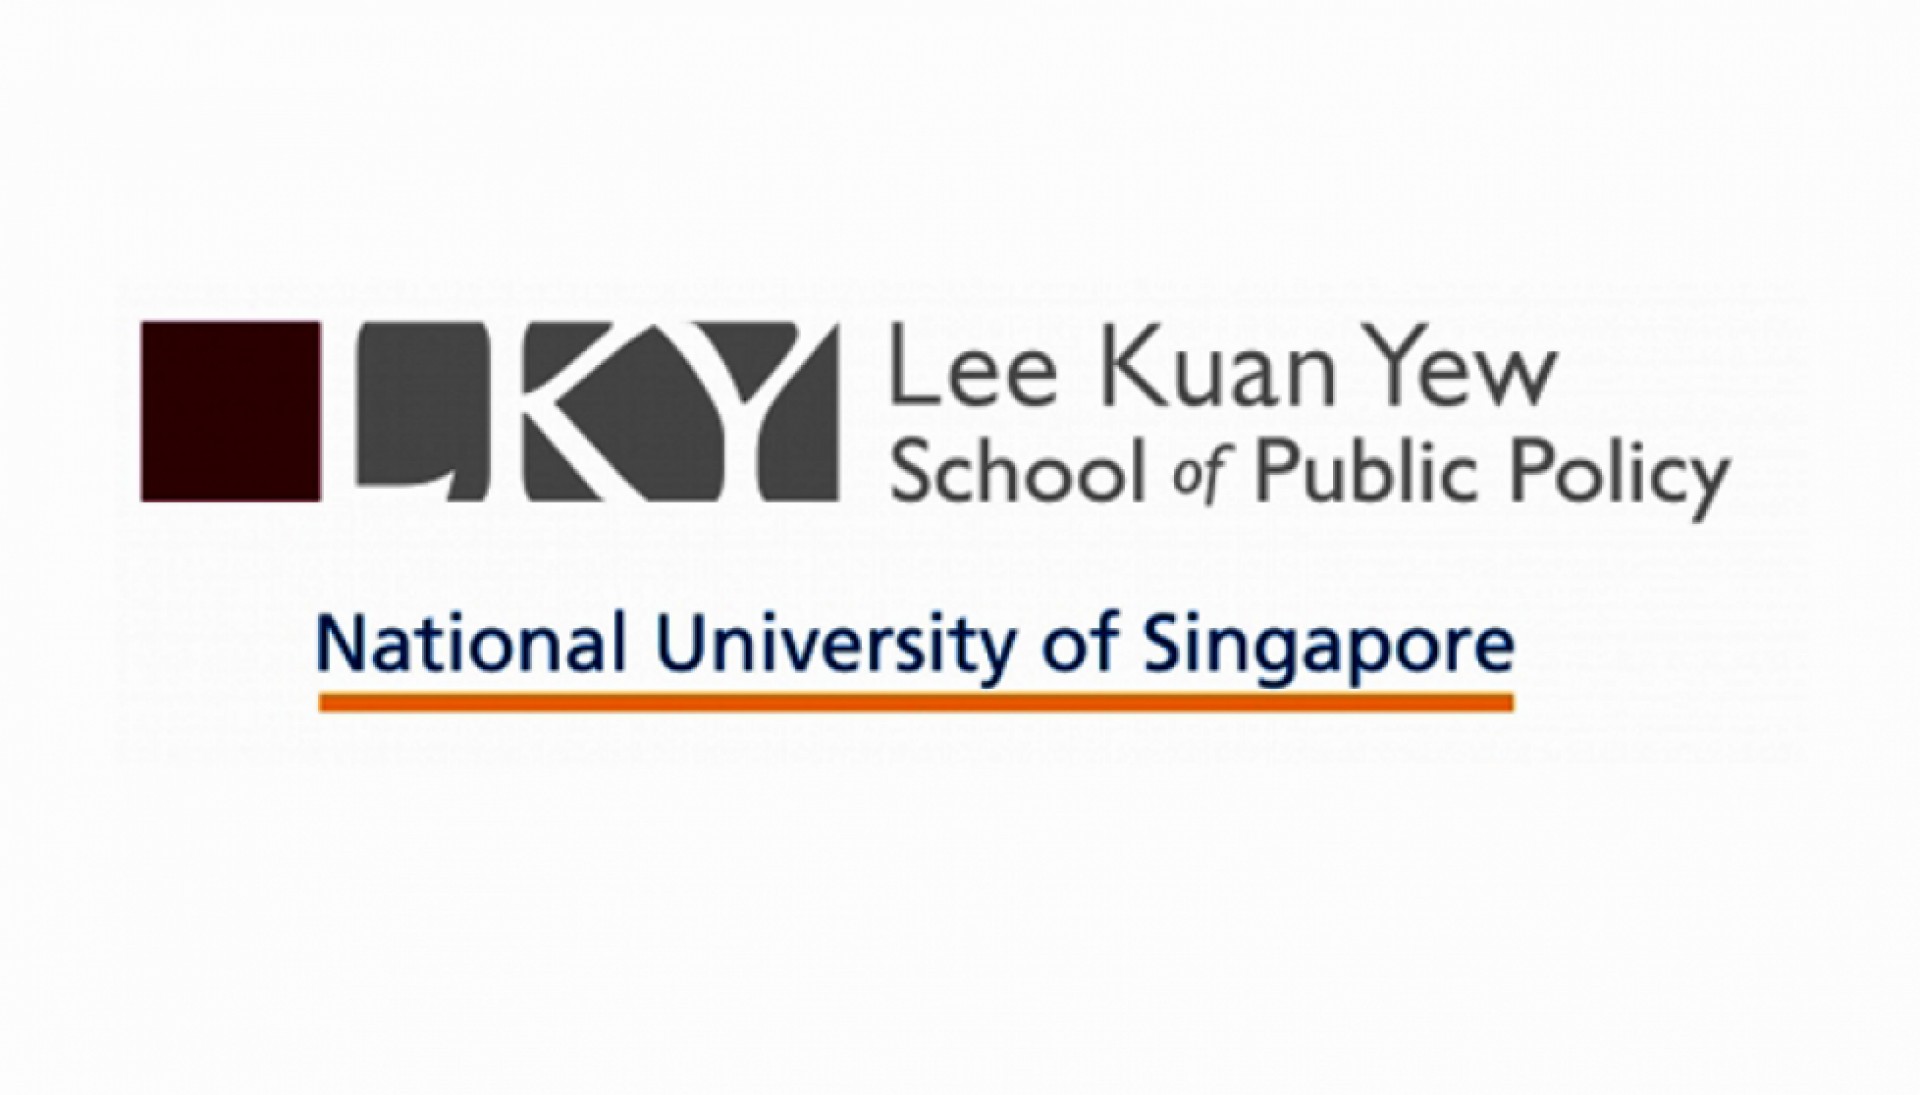 Học Bổng/Trao Đổi Ngắn Hạn Toàn Phần Tại Trường Chính Sách Công Lý Quang Diệu, Singapore 2016